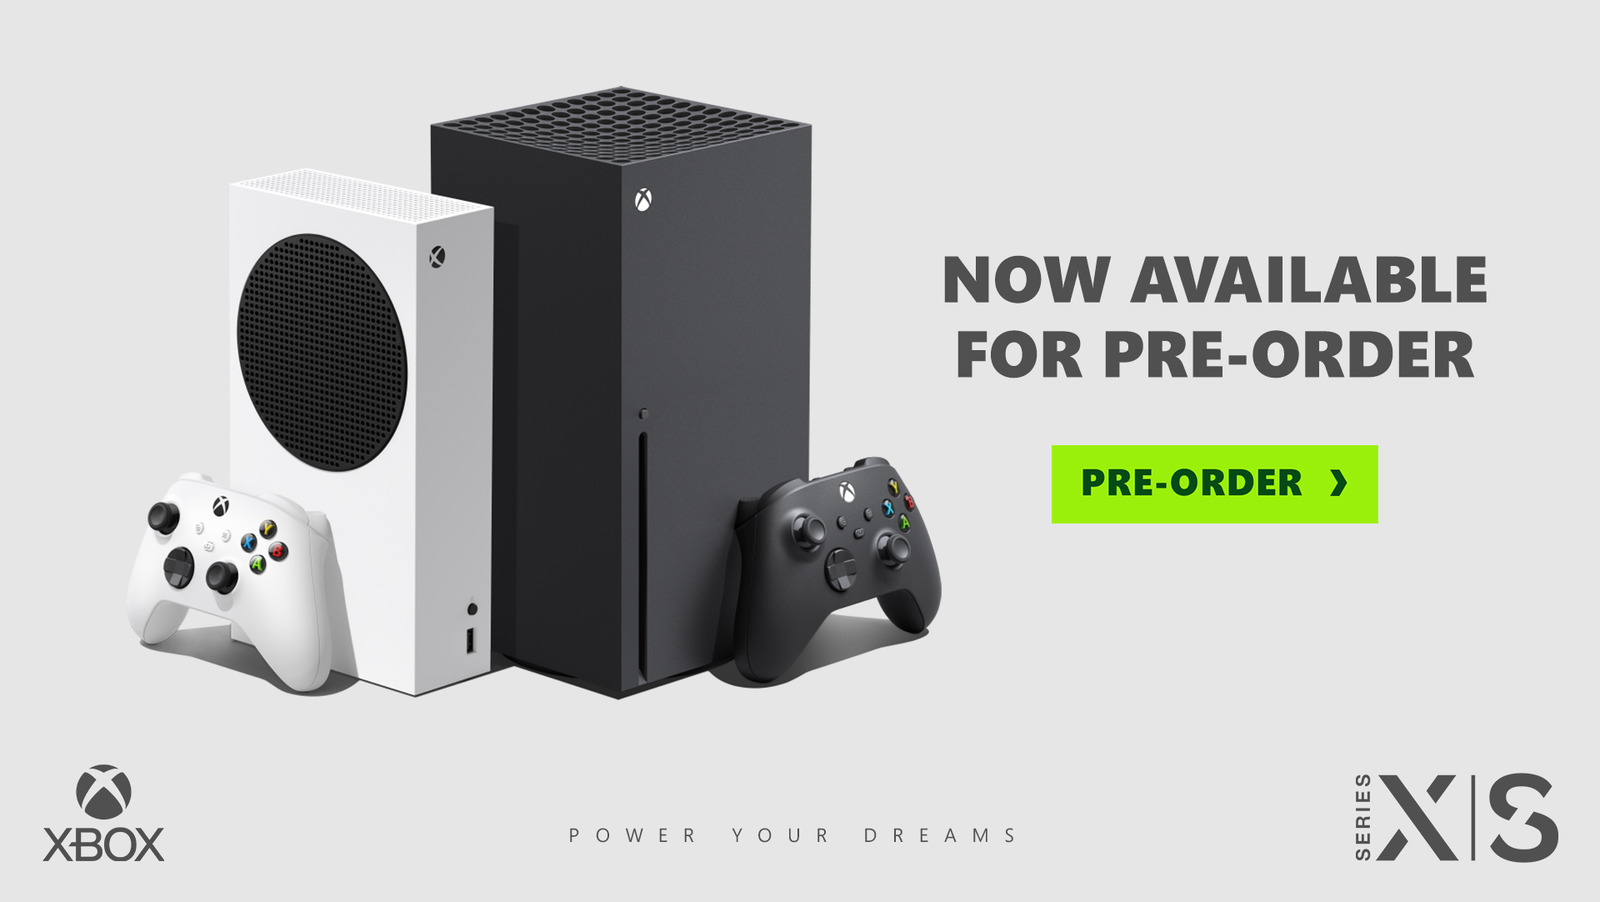 xbox release date 2020 pre order